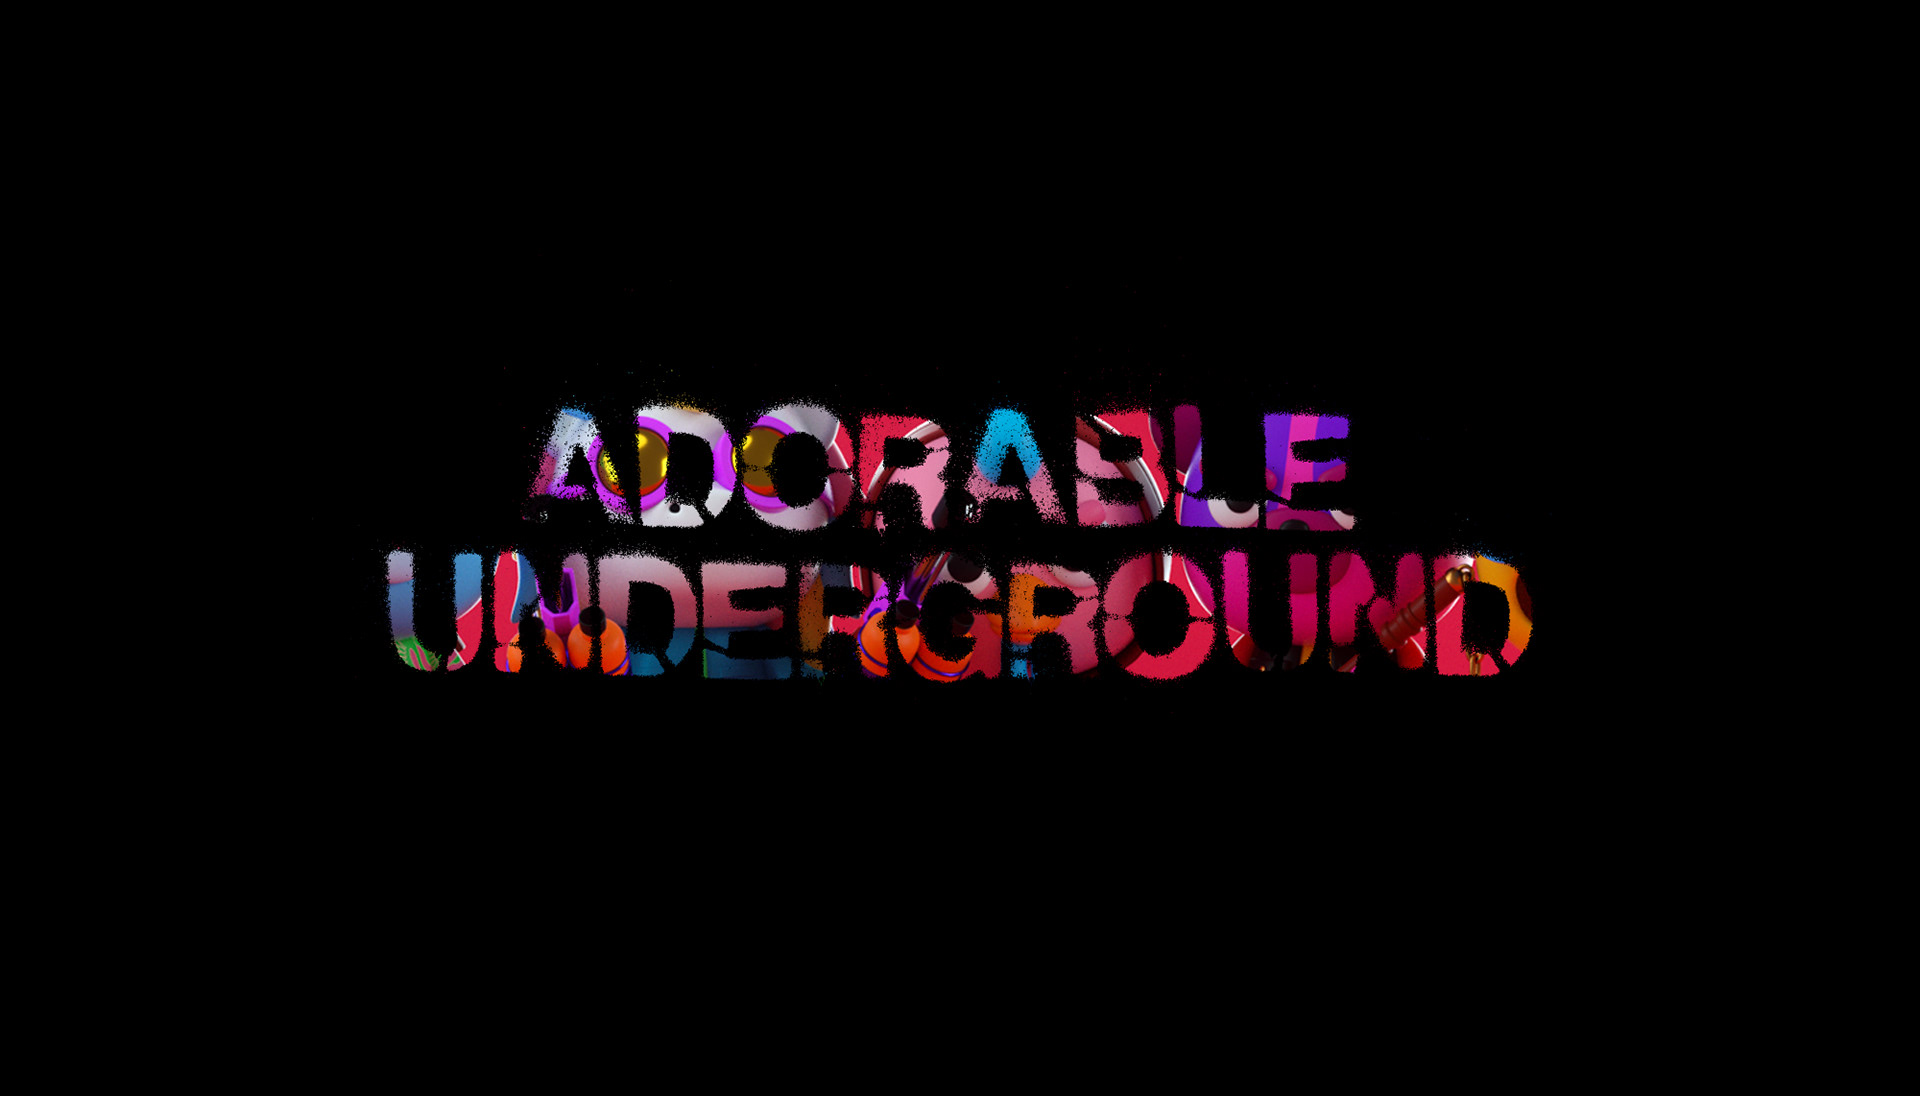 Adorable Underground on Behance3e8efc85063707.5d70a6c39720e.jpg